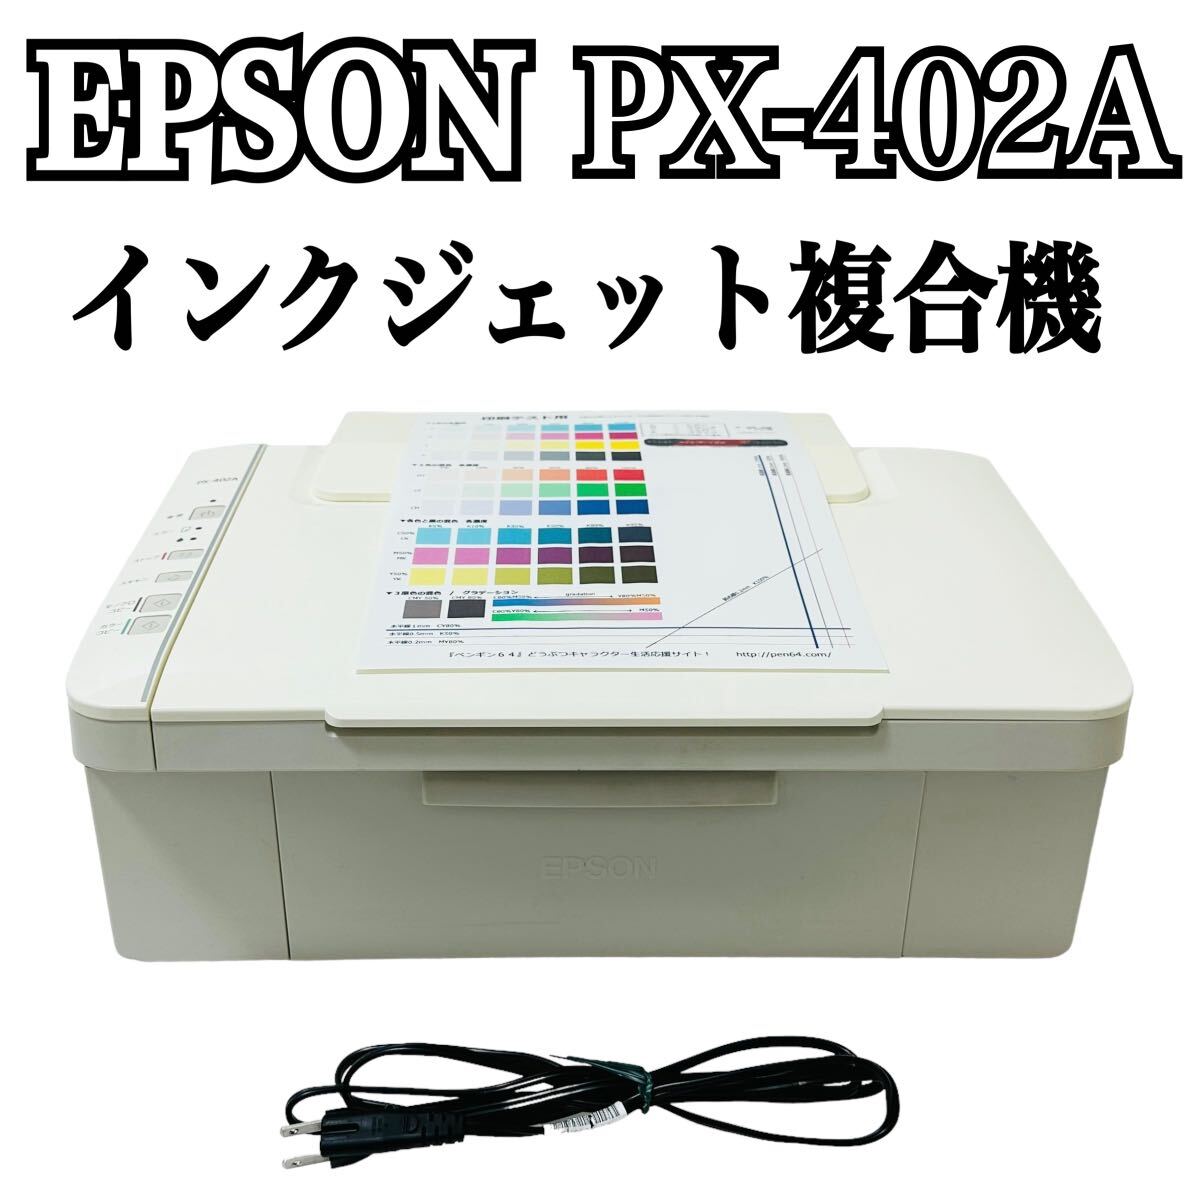 ★ 人気商品 ★ EPSON エプソン Colorio カラリオ インクジェット複合機 PX-402A プリンター 複合機 コピー A4 インクジェットプリンターの画像1